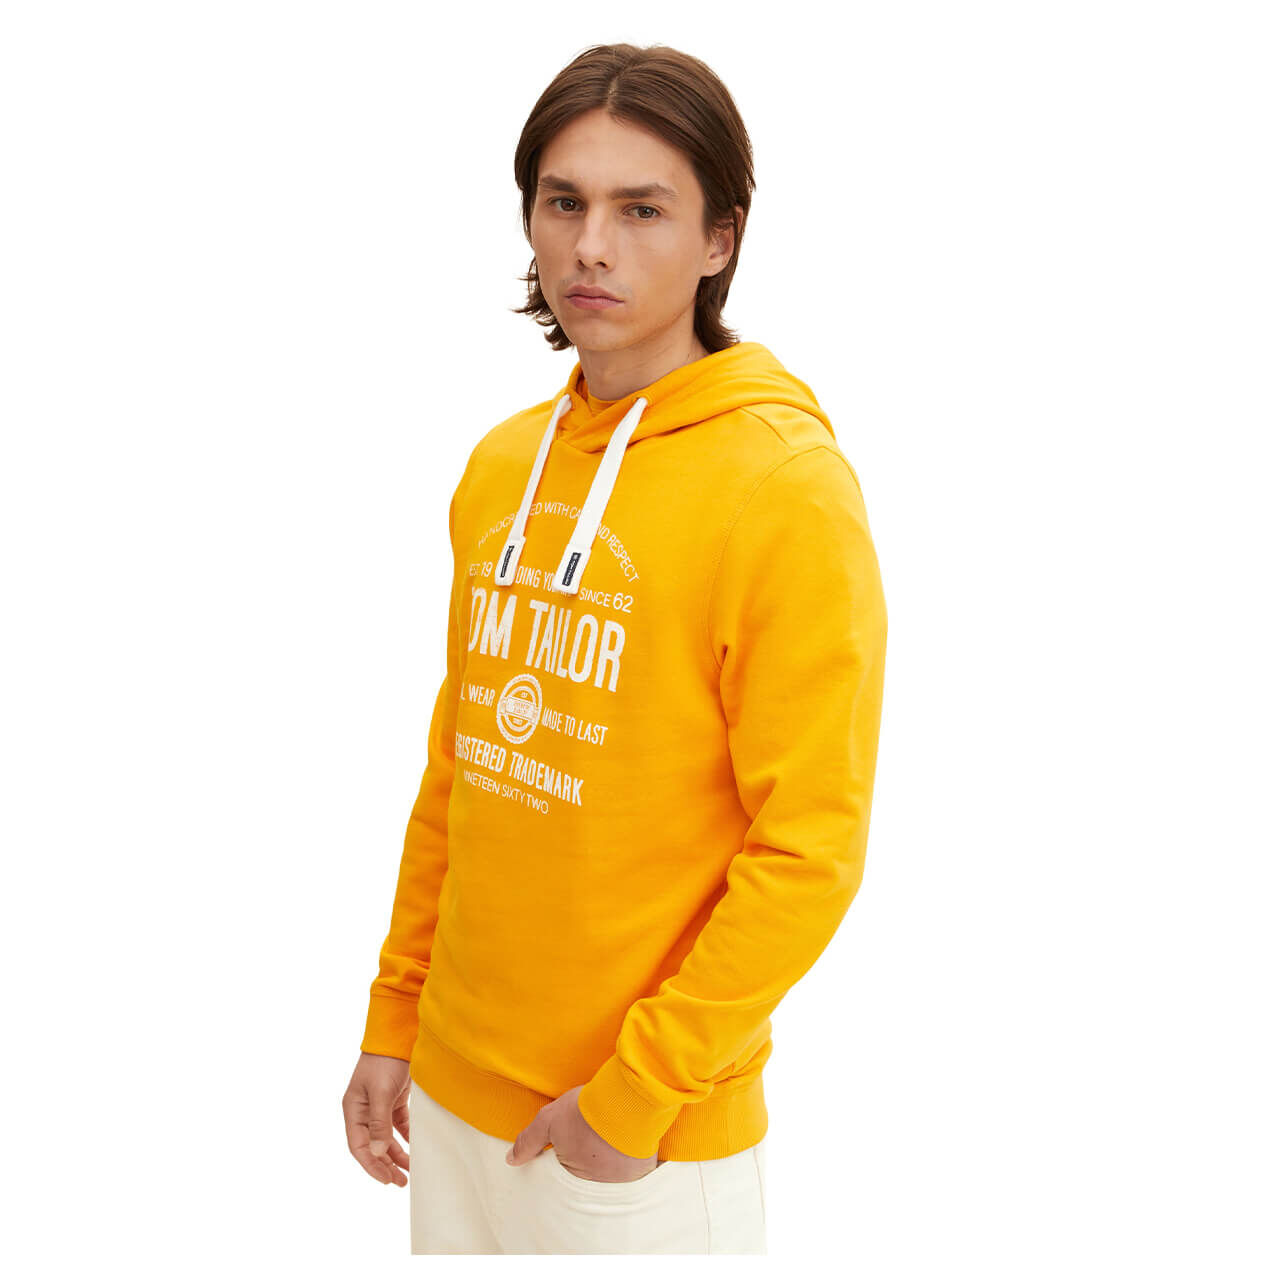 Tom Tailor Hoodie With Print Sweatshirt für Herren in Gelb mit Print, FarbNr.: 24135